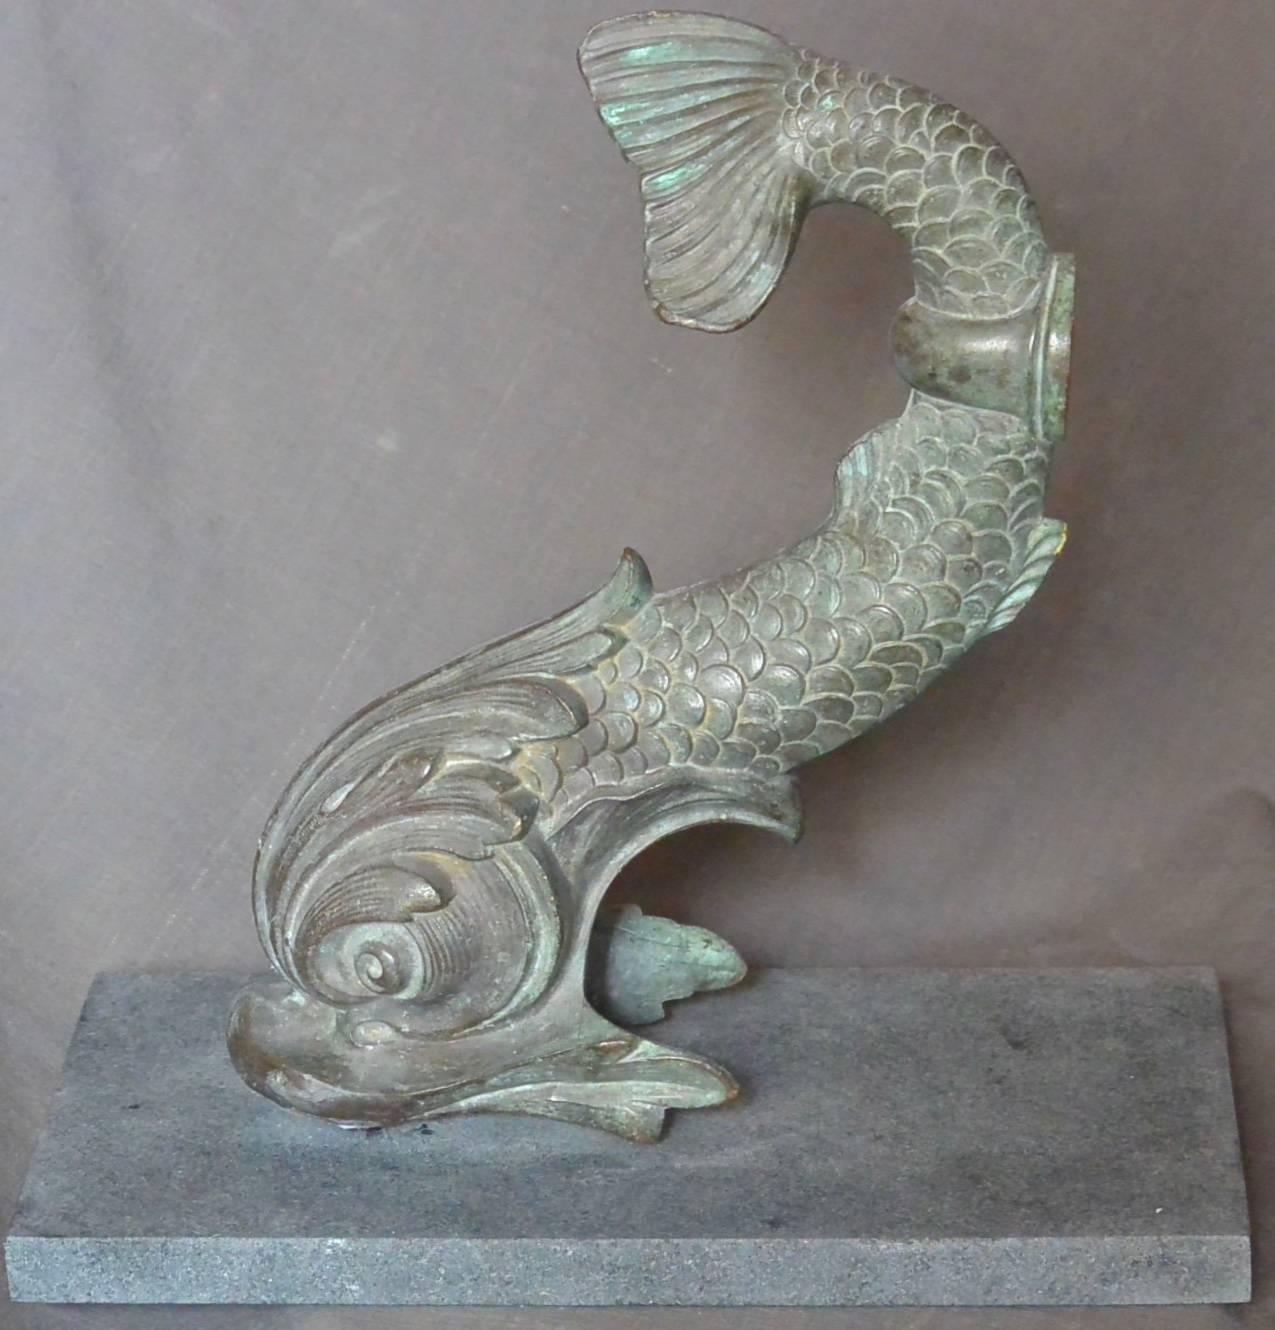 Sculpture de dauphin en bronze. Dauphin en bronze dans un style baroque vénitien de serpent de mer monté sur une base en marbre noir ; un serre-livre très sculptural. 
États-Unis, vers 1900.
Dimensions : 7